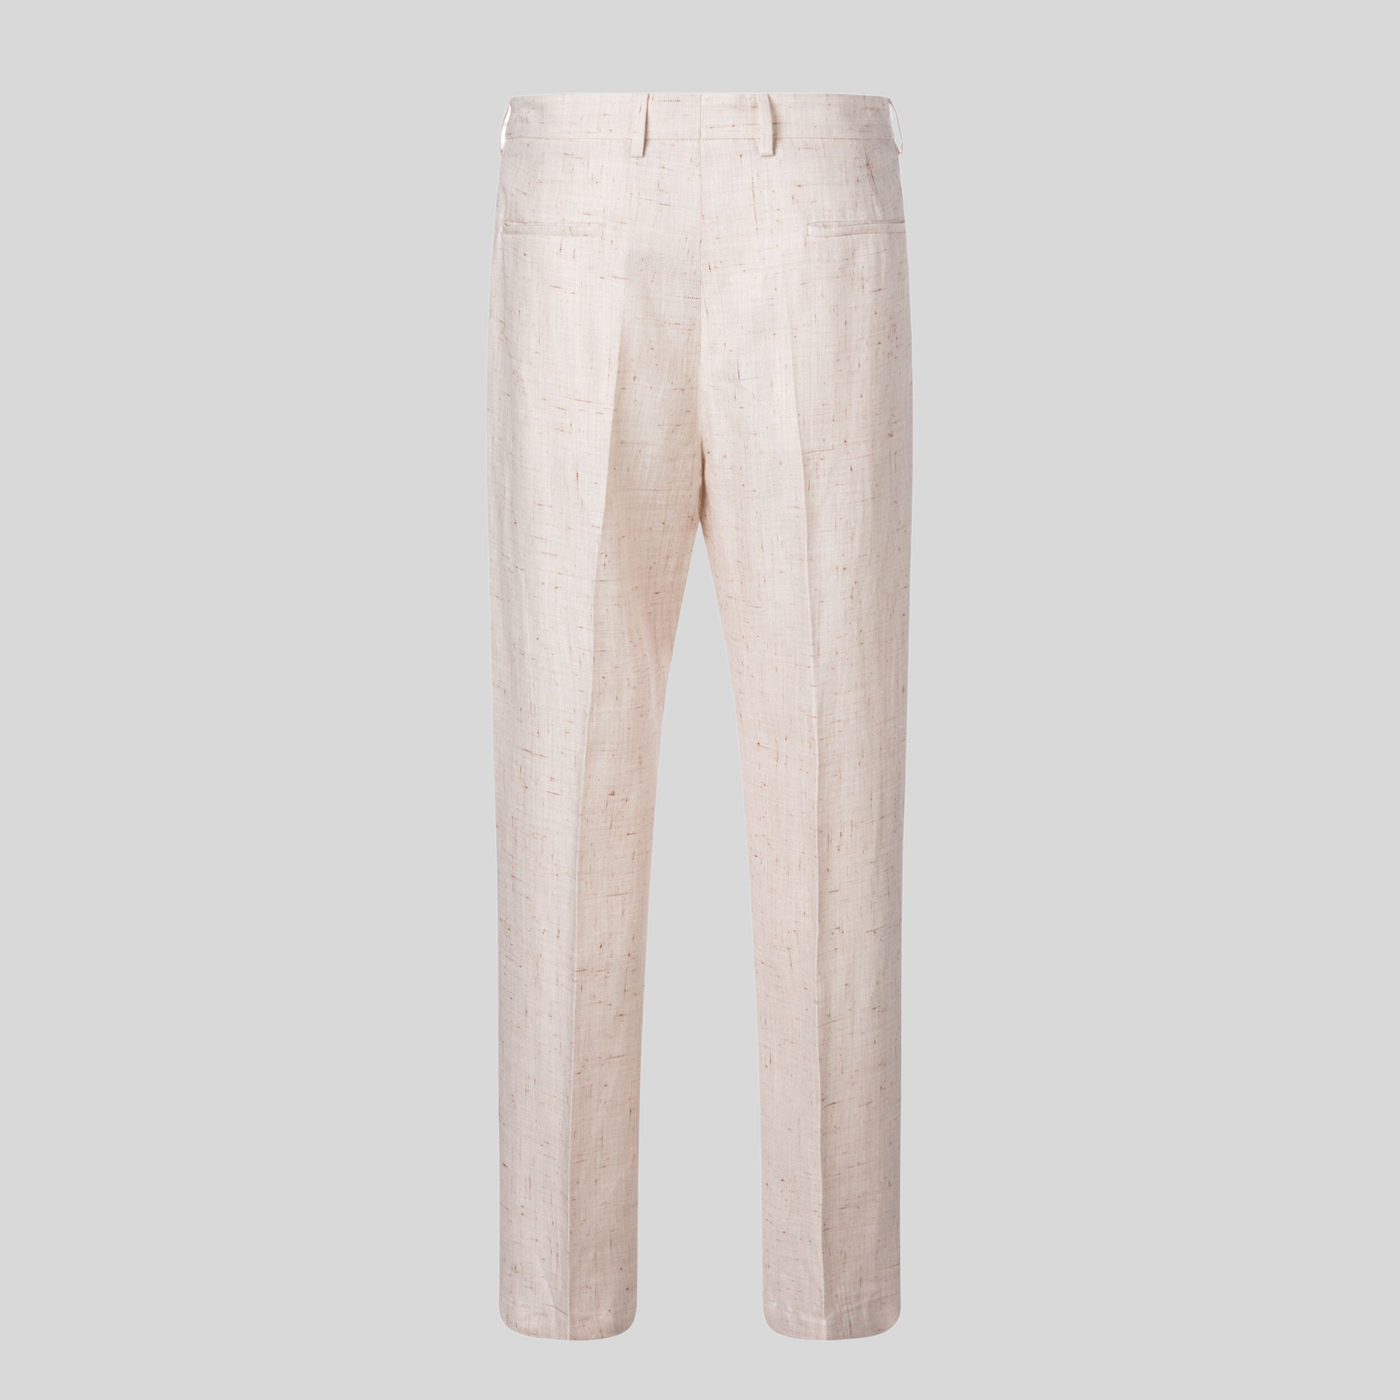 Gotstyle Fashion - Strellson Suits Mottled Linen Blend Suit Pants - Off-White